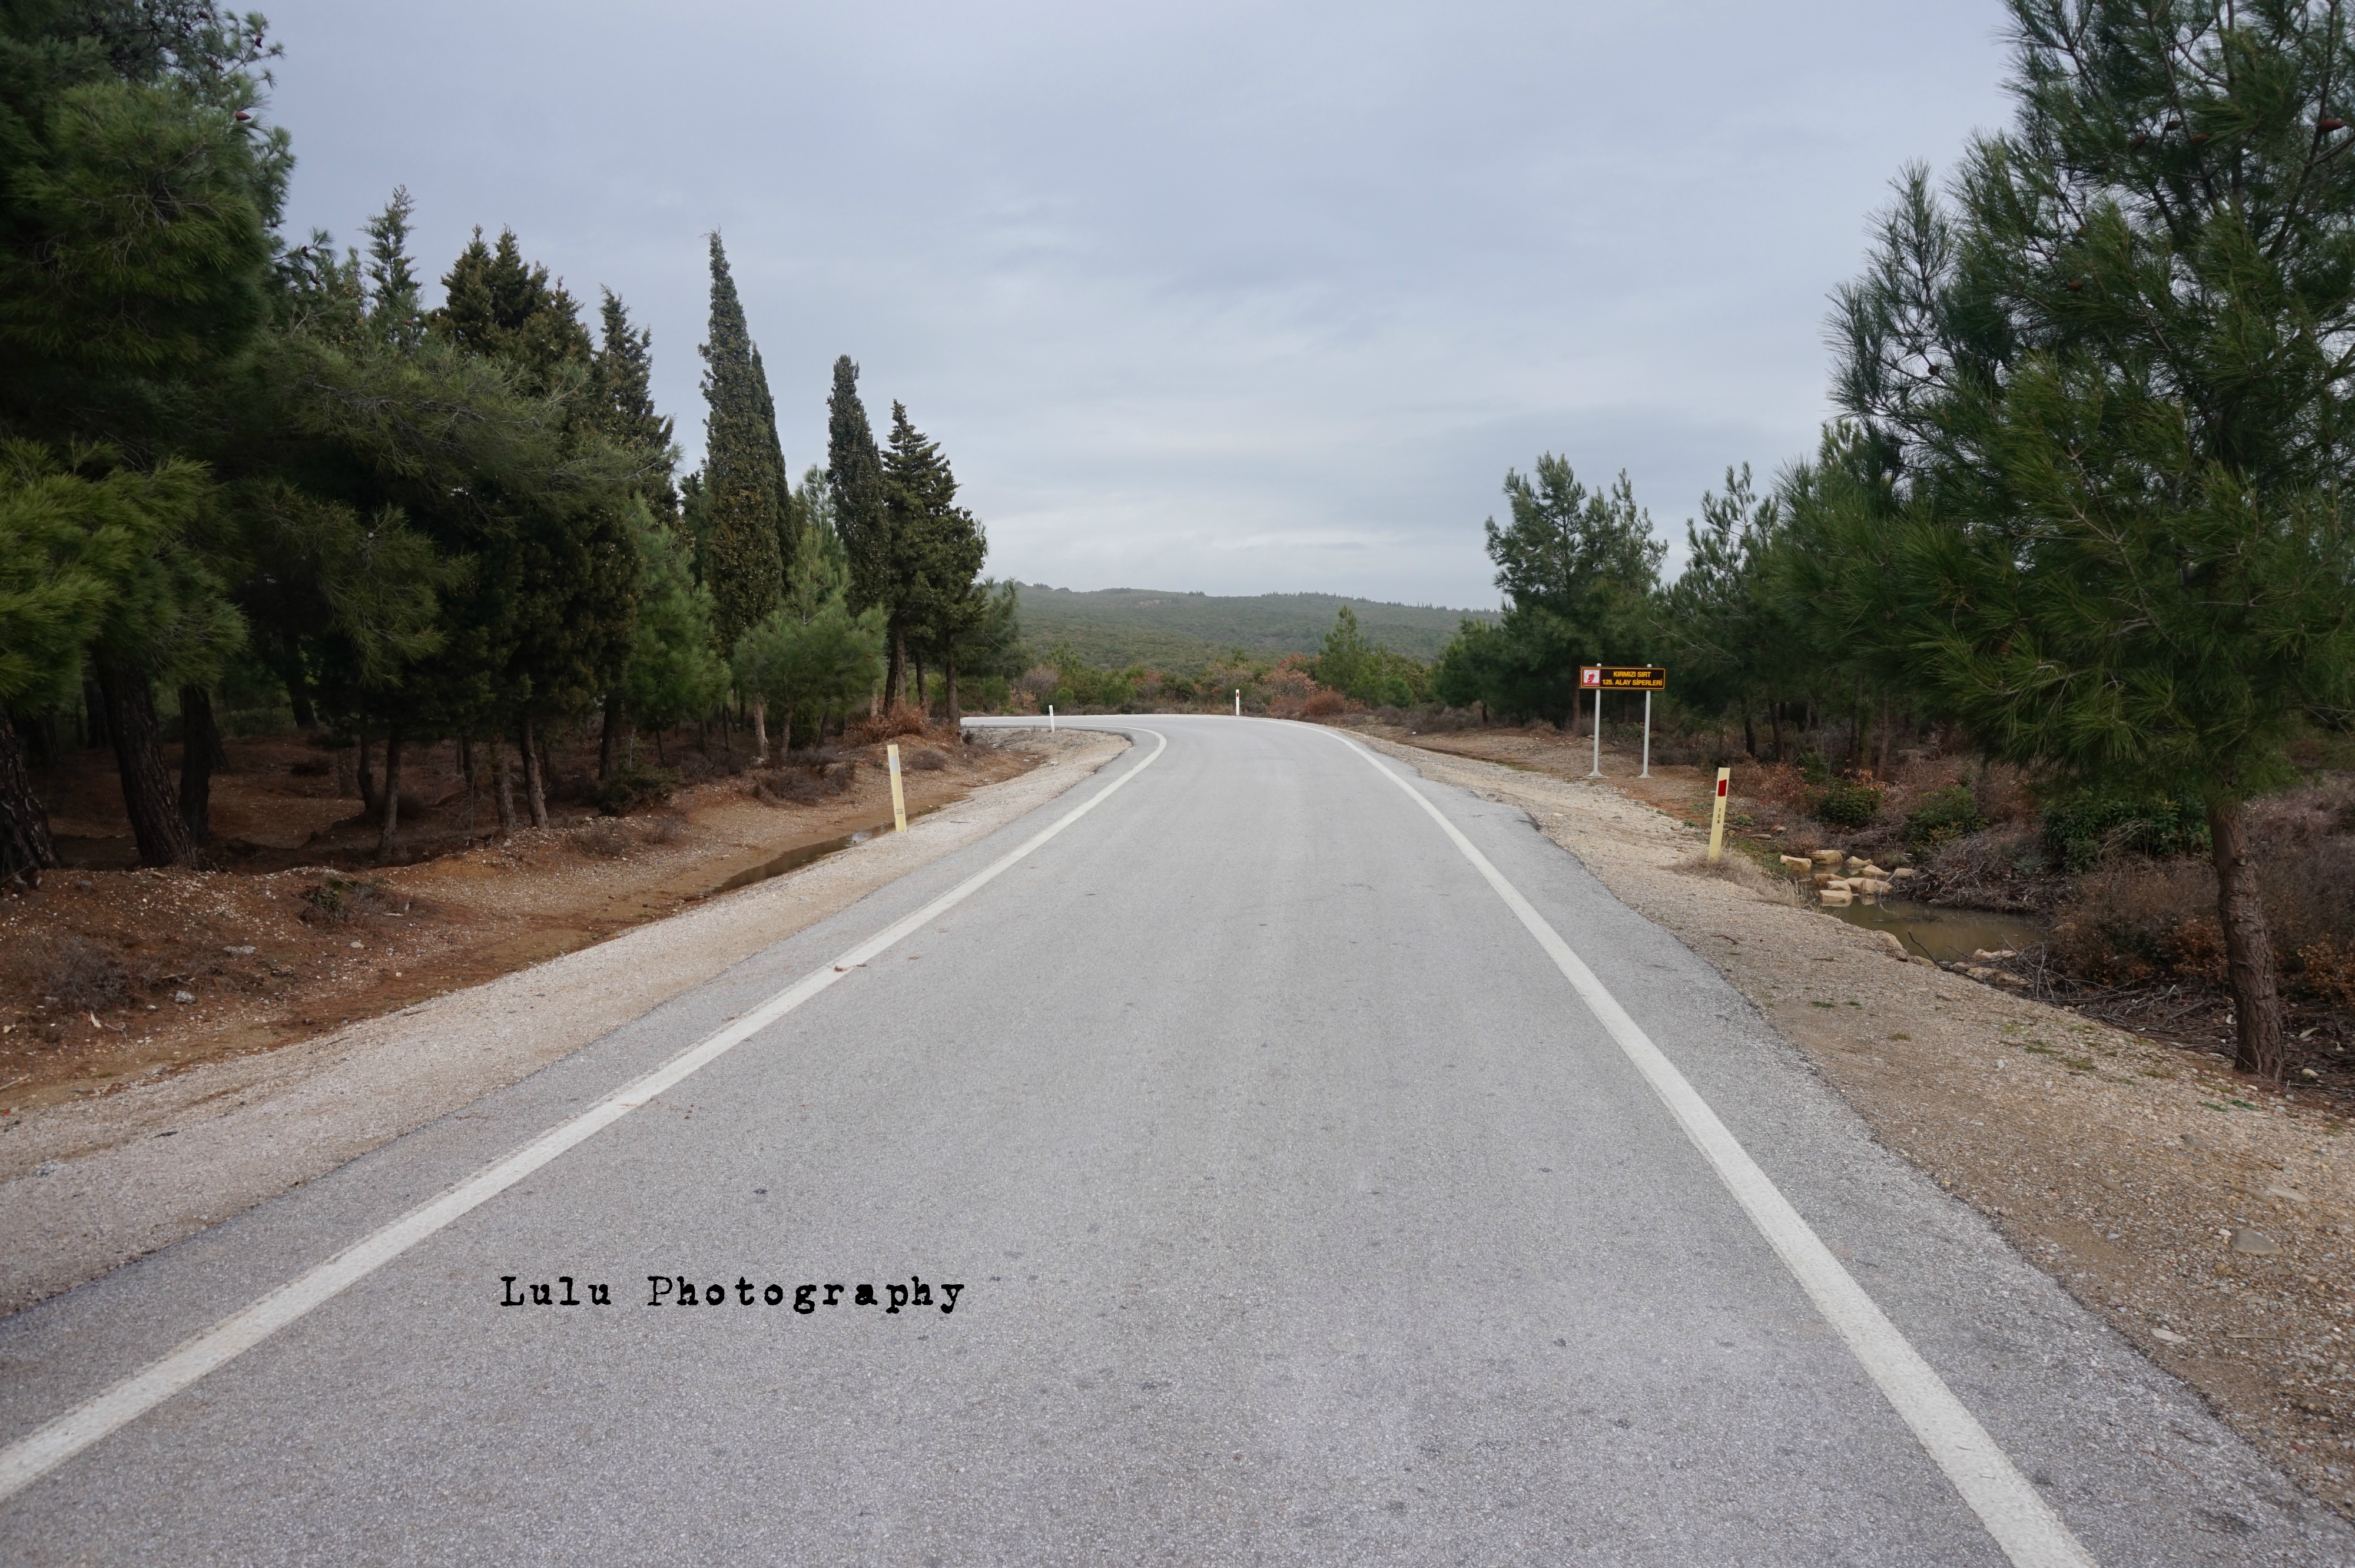 Wide open road